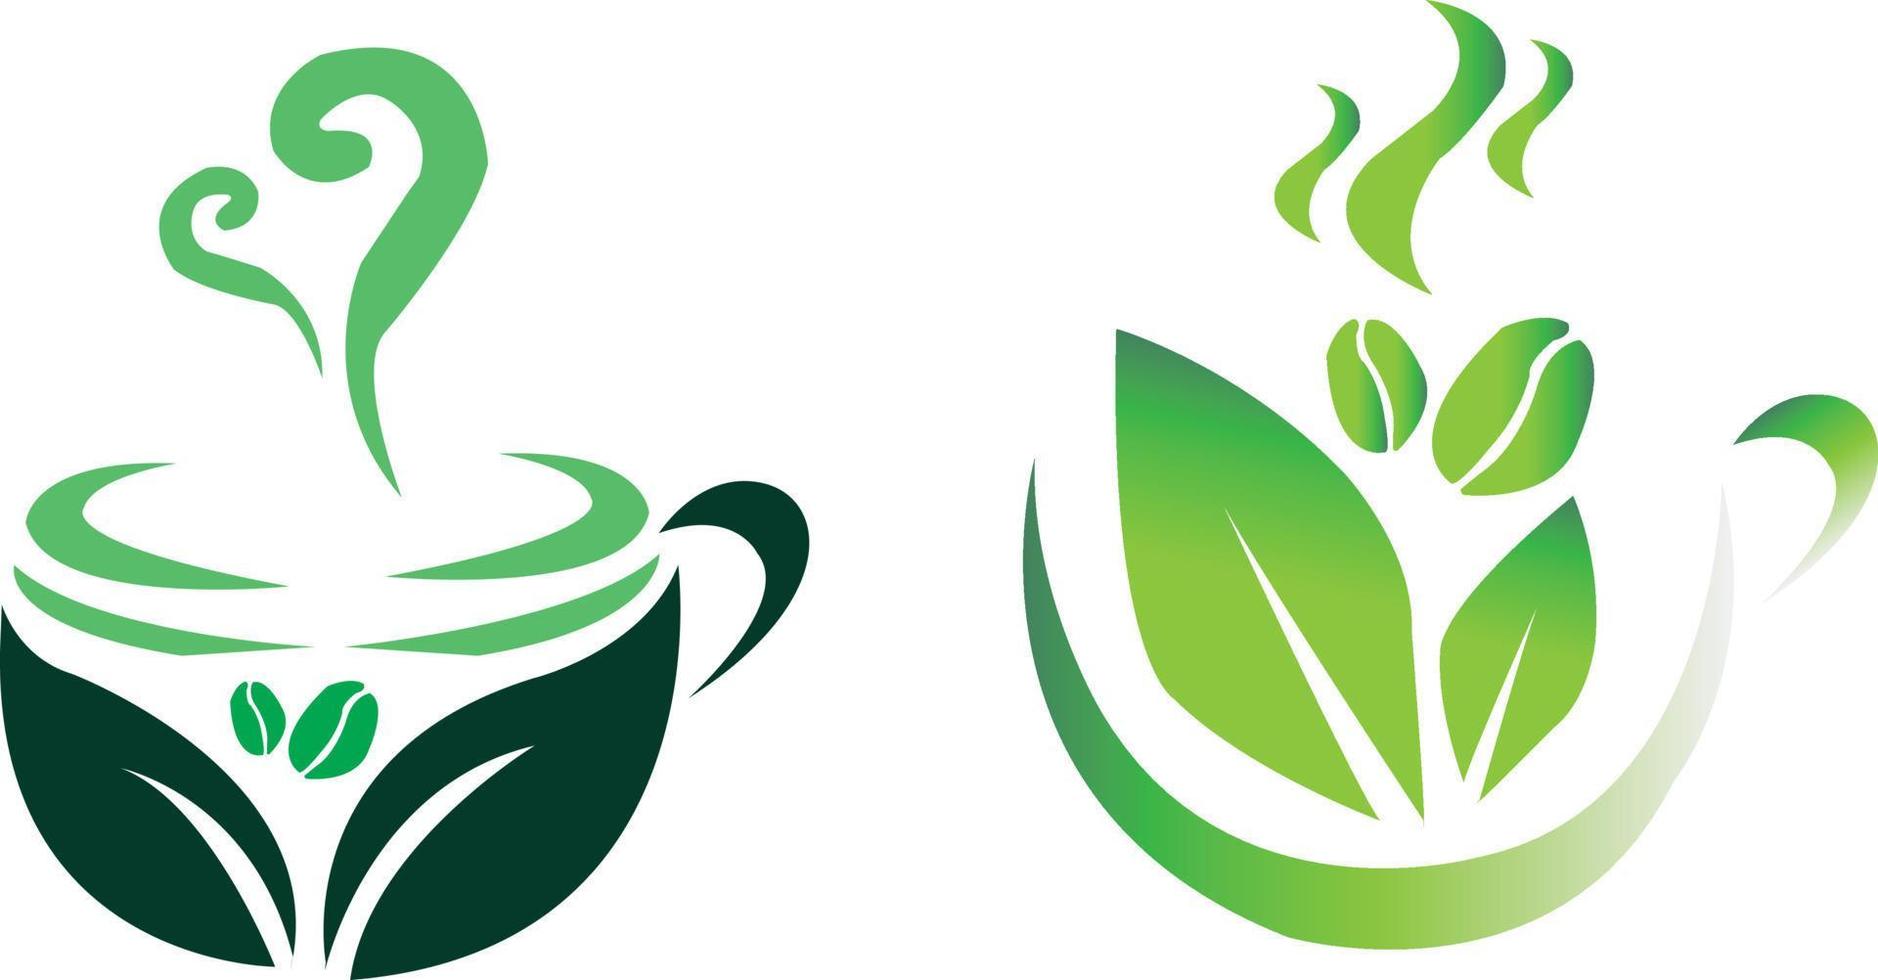 Logo-Kaffee-Café für Ihr Unternehmen, grünes Kaffee-Logo vektor